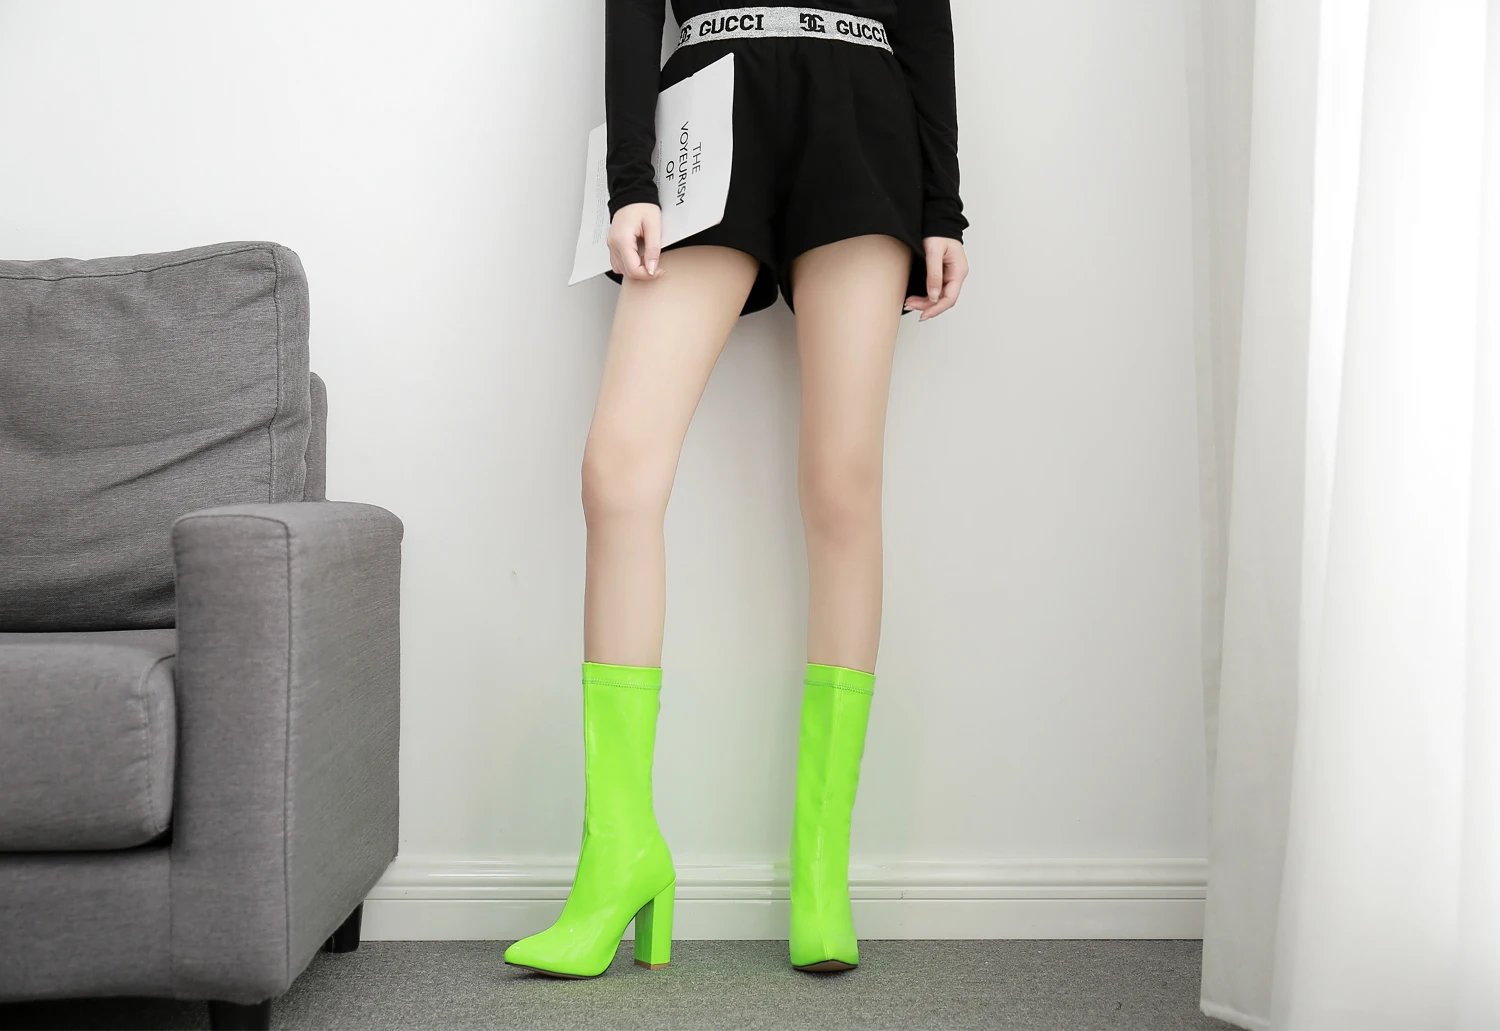 AIYKAZYSDL/сезон весна-осень; женские ботинки; цвет РОЗОВЫЙ, неоновый, зеленый; виниловые блестящие лакированные кожаные ботинки; модельные туфли на высоком толстом каблуке